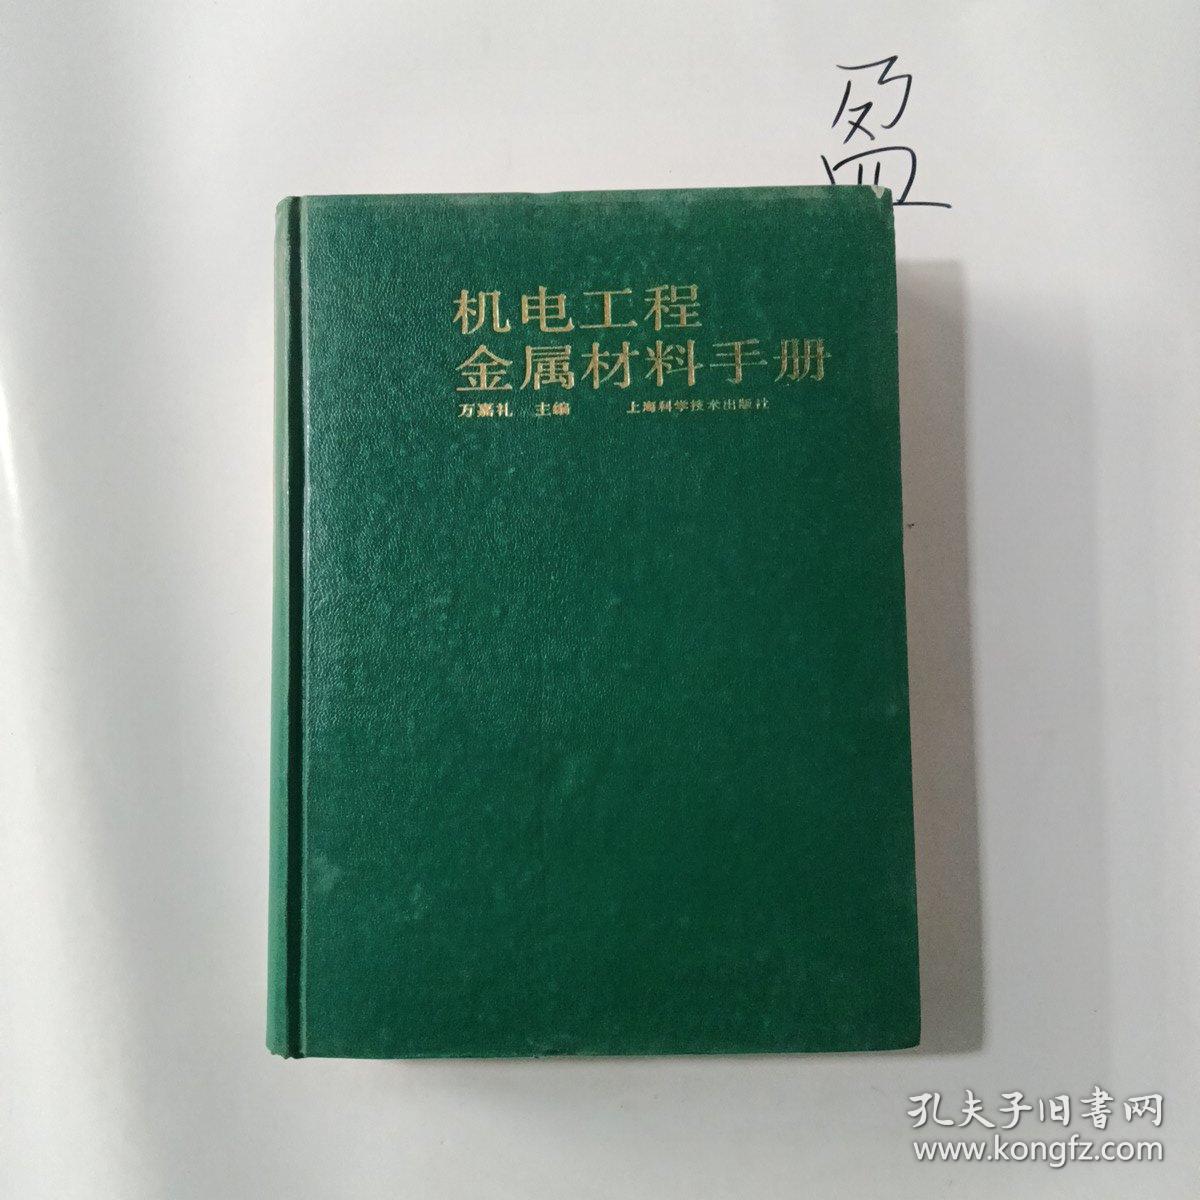 机电工程金属材料手册